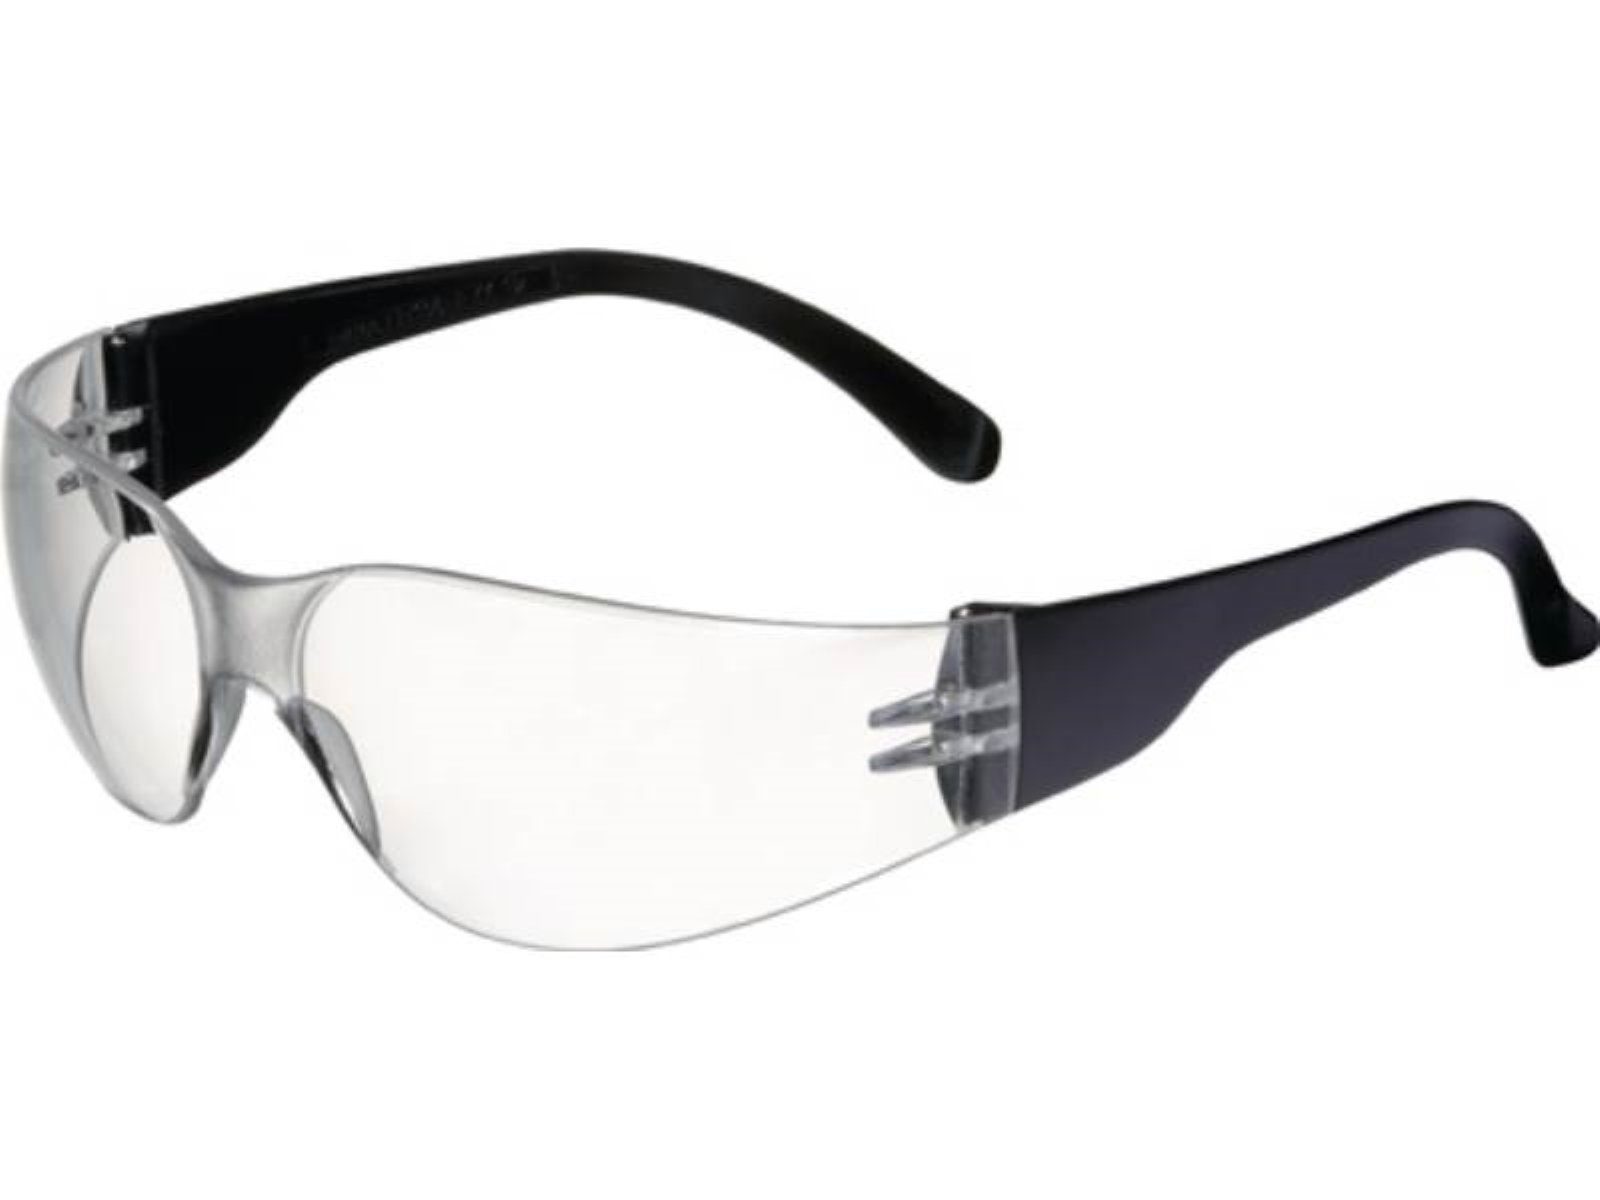 Bügel PROM Schutzbrille Basic klar schwarz,Scheibe EN Daylight 166 PROMAT PC Arbeitsschutzbrille